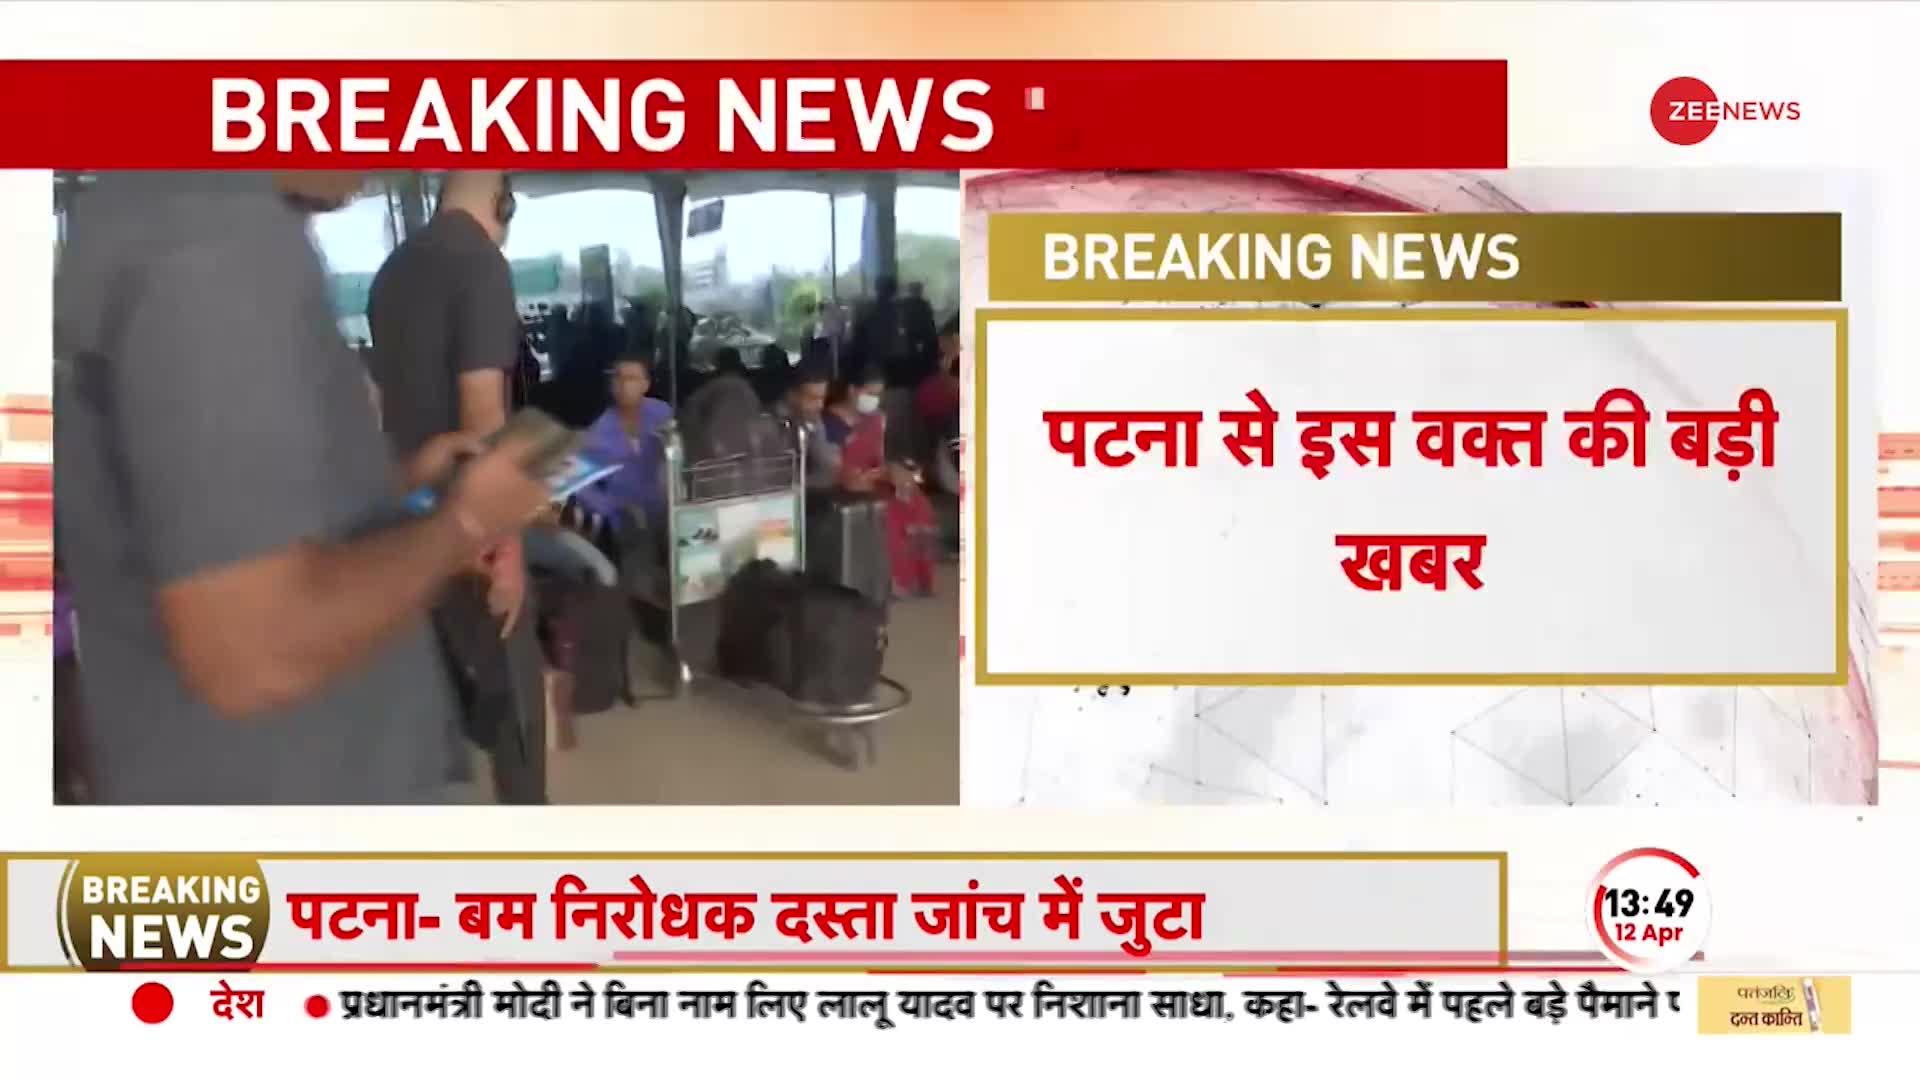 Patna Airport Bomb Threat: बम की खबर से हवाई अड्डे पर सनसनी, बम निरोधक दस्ते की जांच जारी